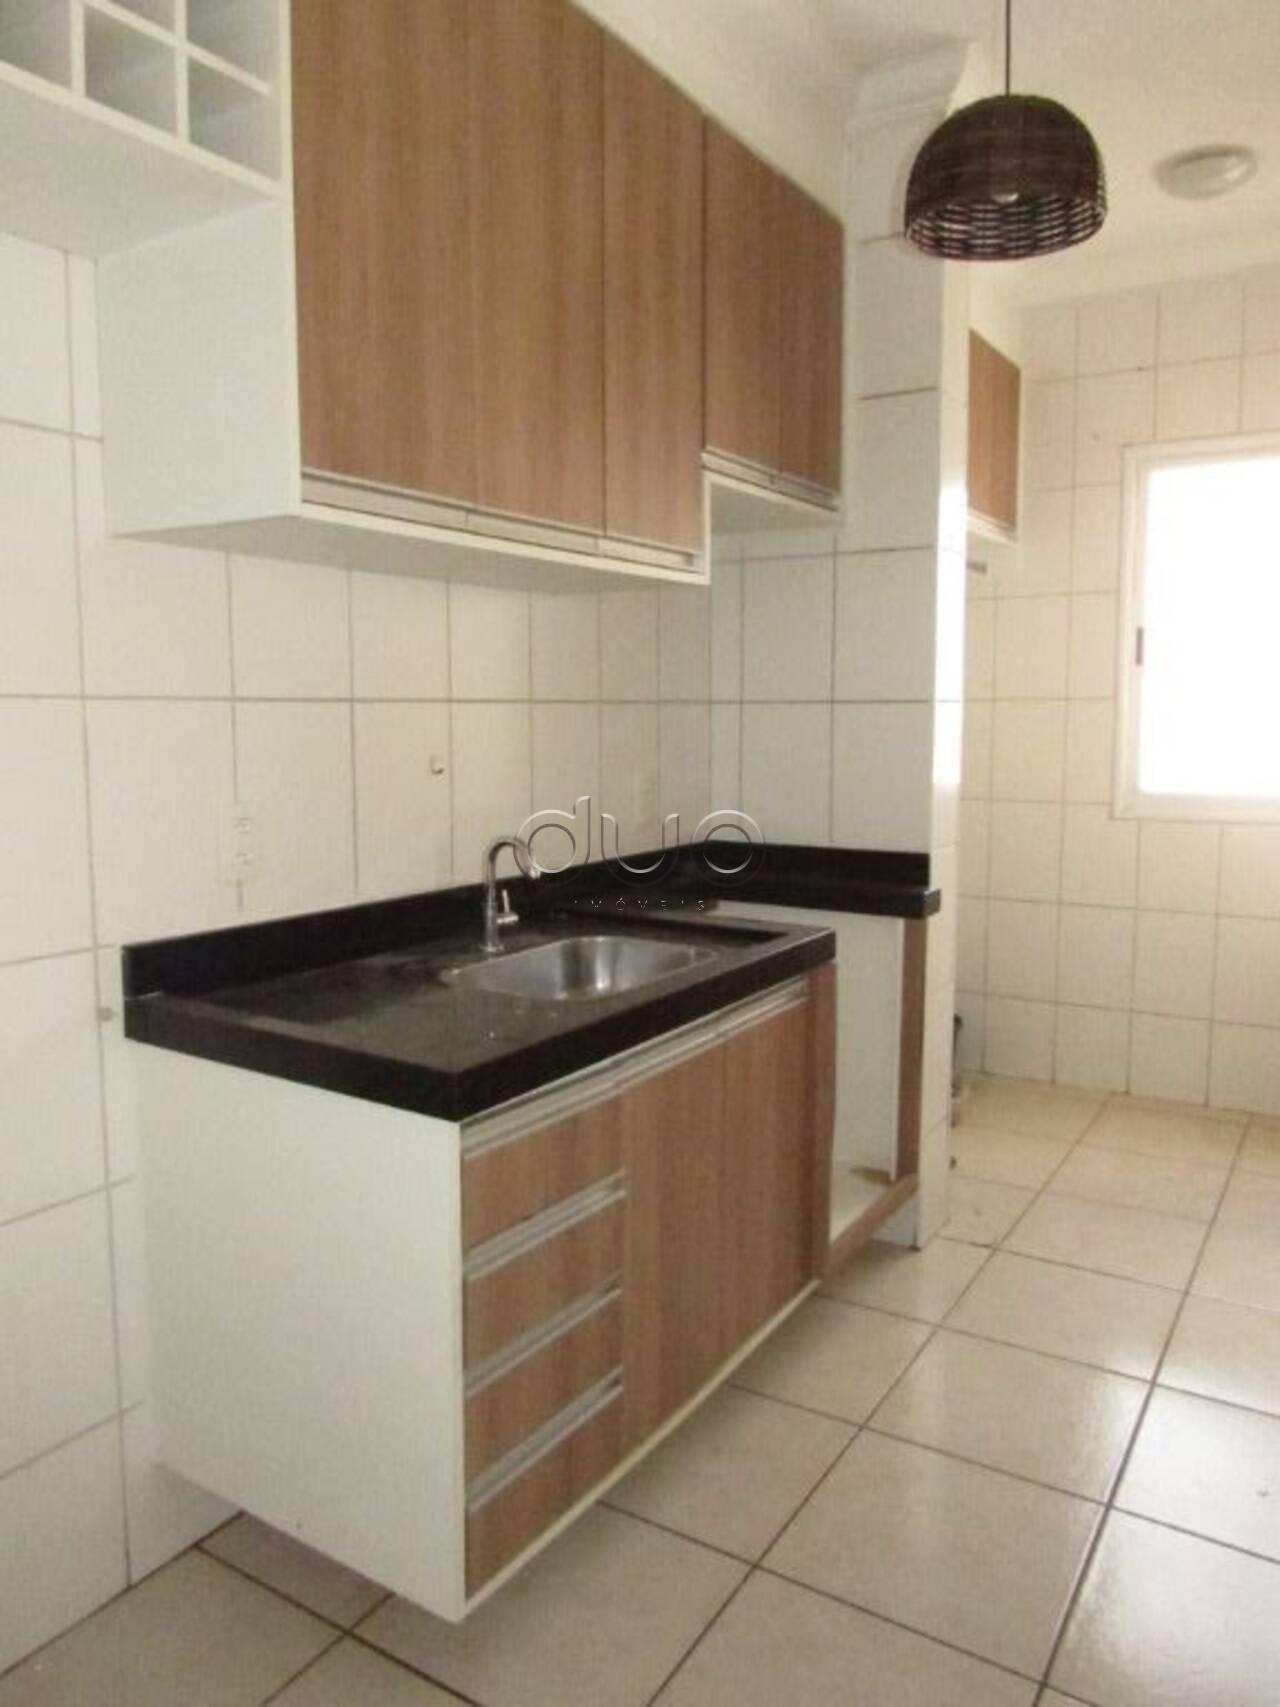 Apartamento com 2 dormitórios à venda, 54 m² por R$ 140.000 - Jardim Parque Jupiá - Piracicaba/SP